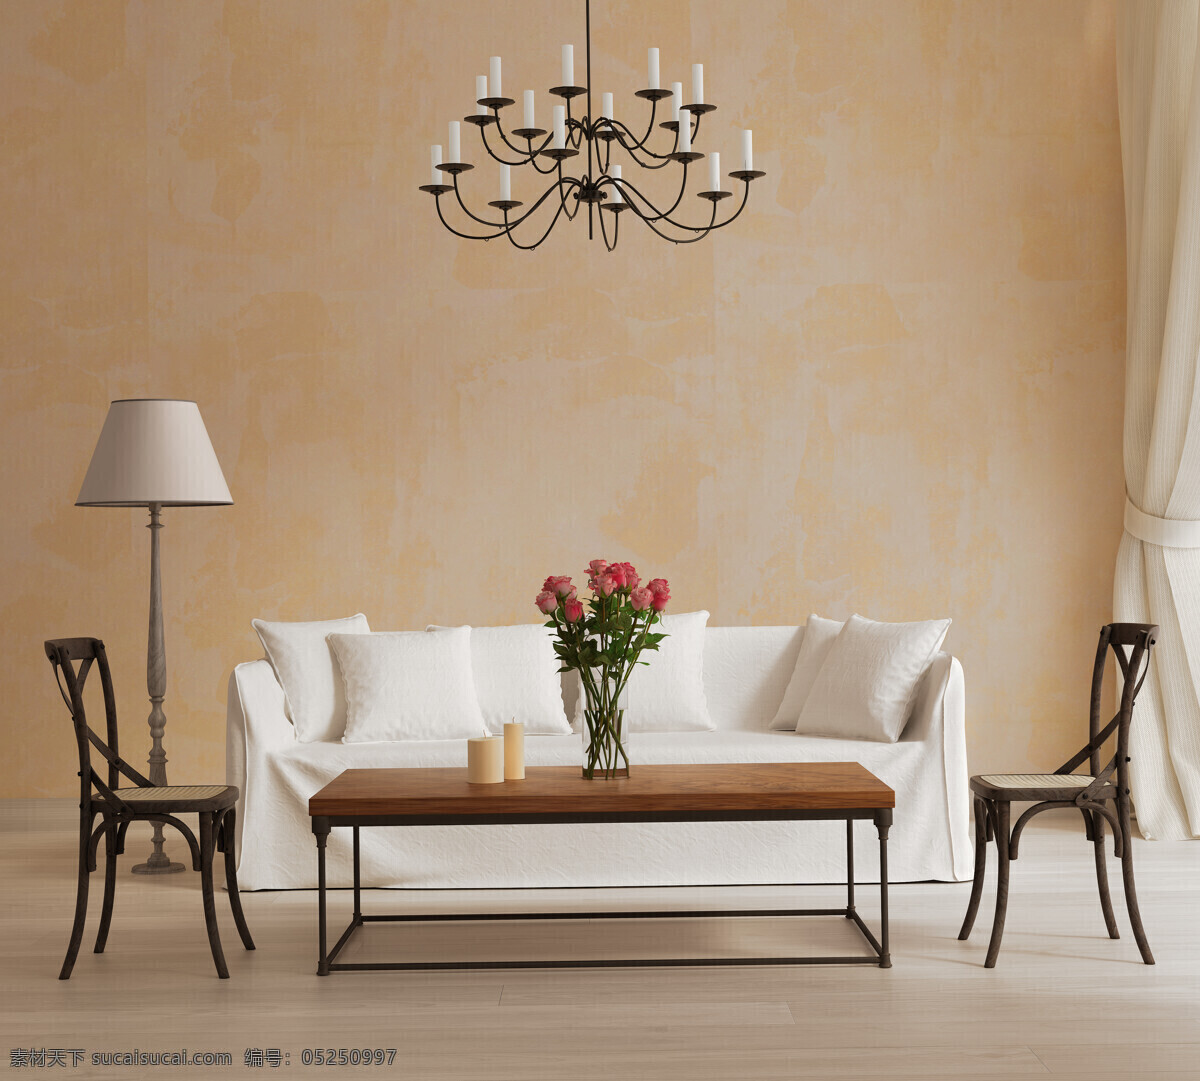 简洁 客厅 白色沙发 鲜花 吊灯 台灯 椅子 室内设计 环境家居